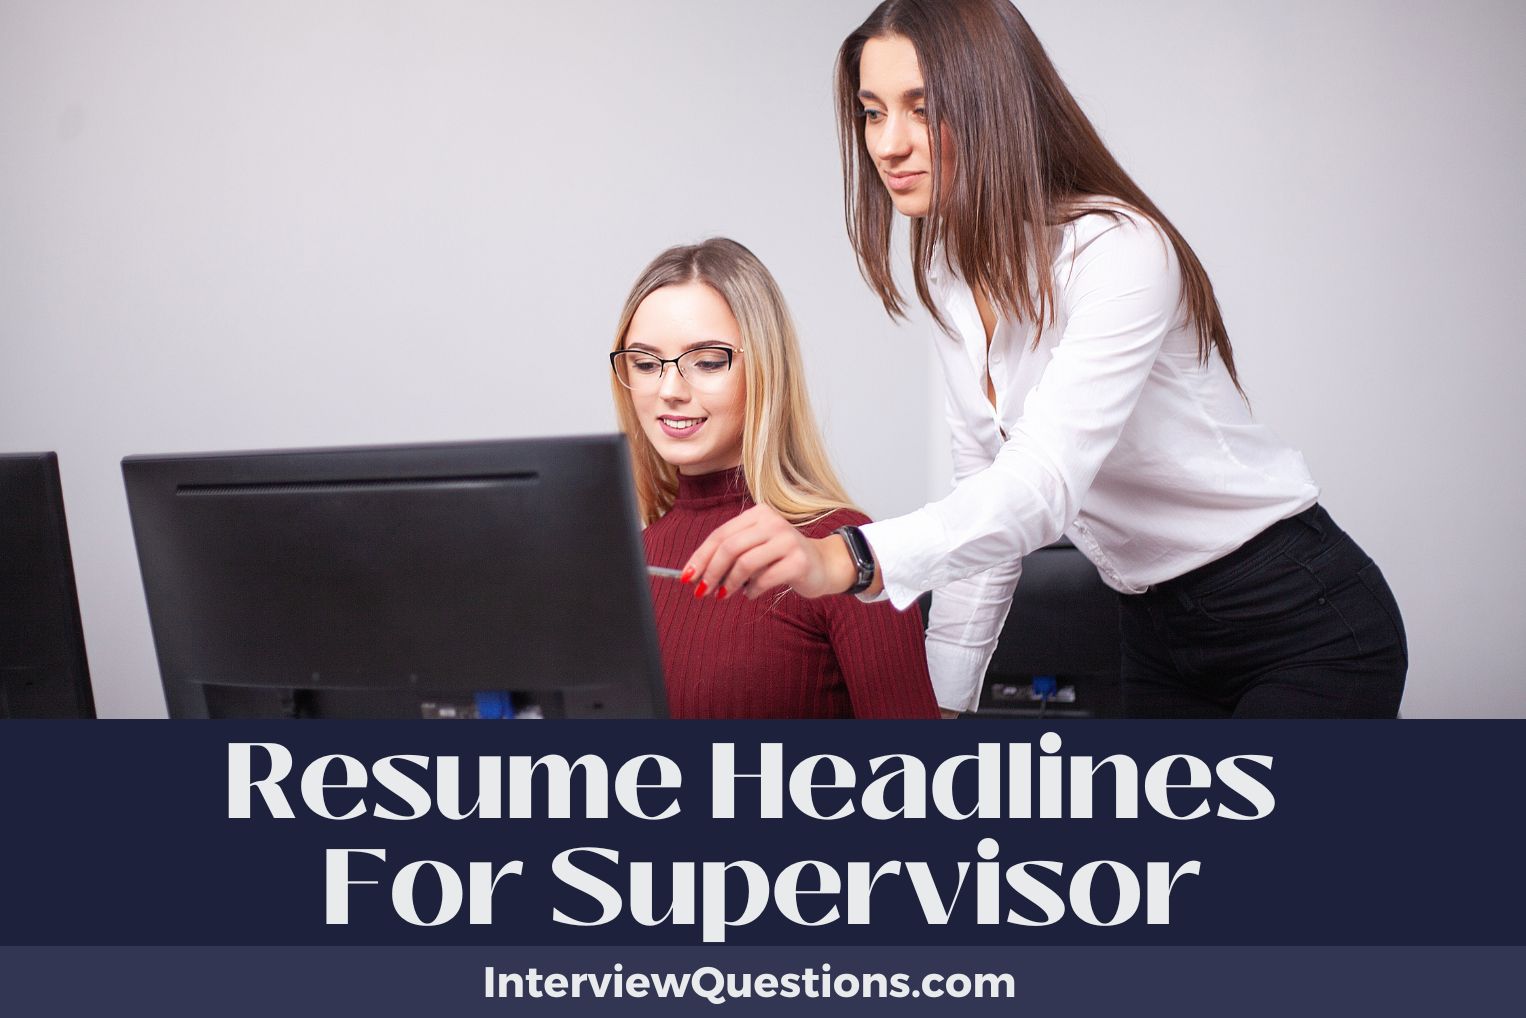 Resume Headlines For Supervisor